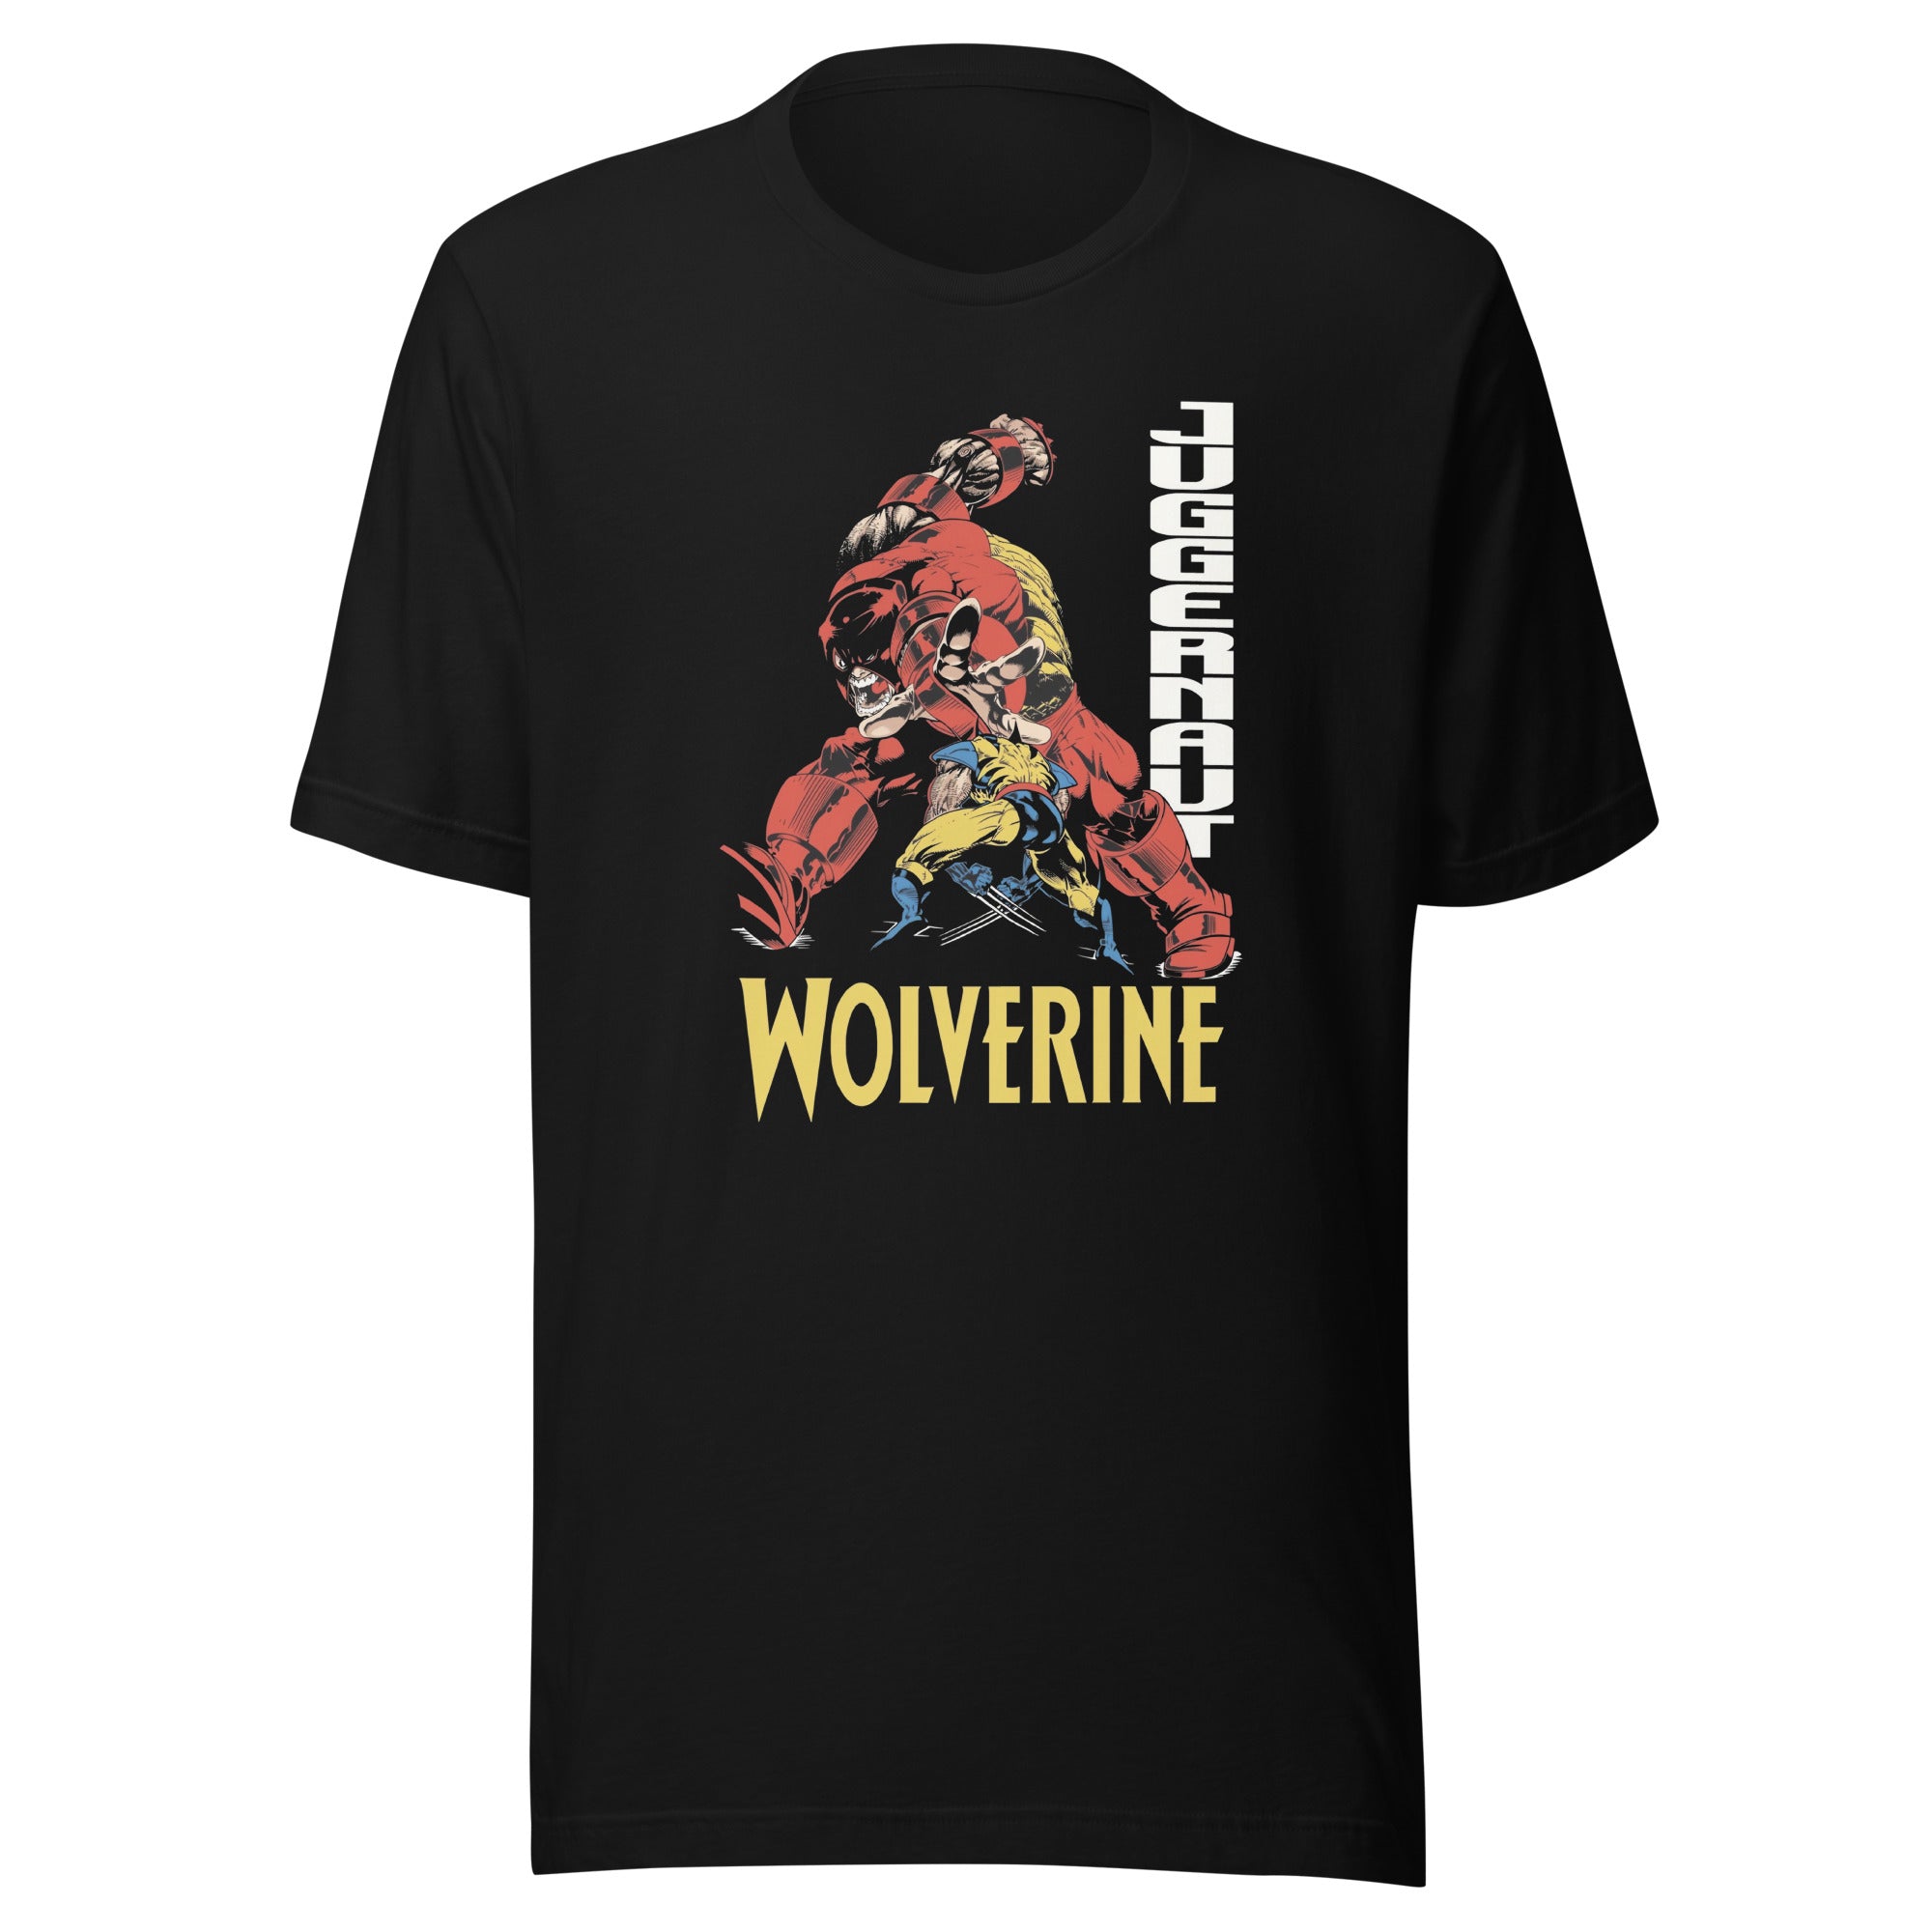 ¡Compra el mejor merchandising en Superstar! Encuentra diseños únicos y de alta calidad, Playera Wolverine vs Juggernaut